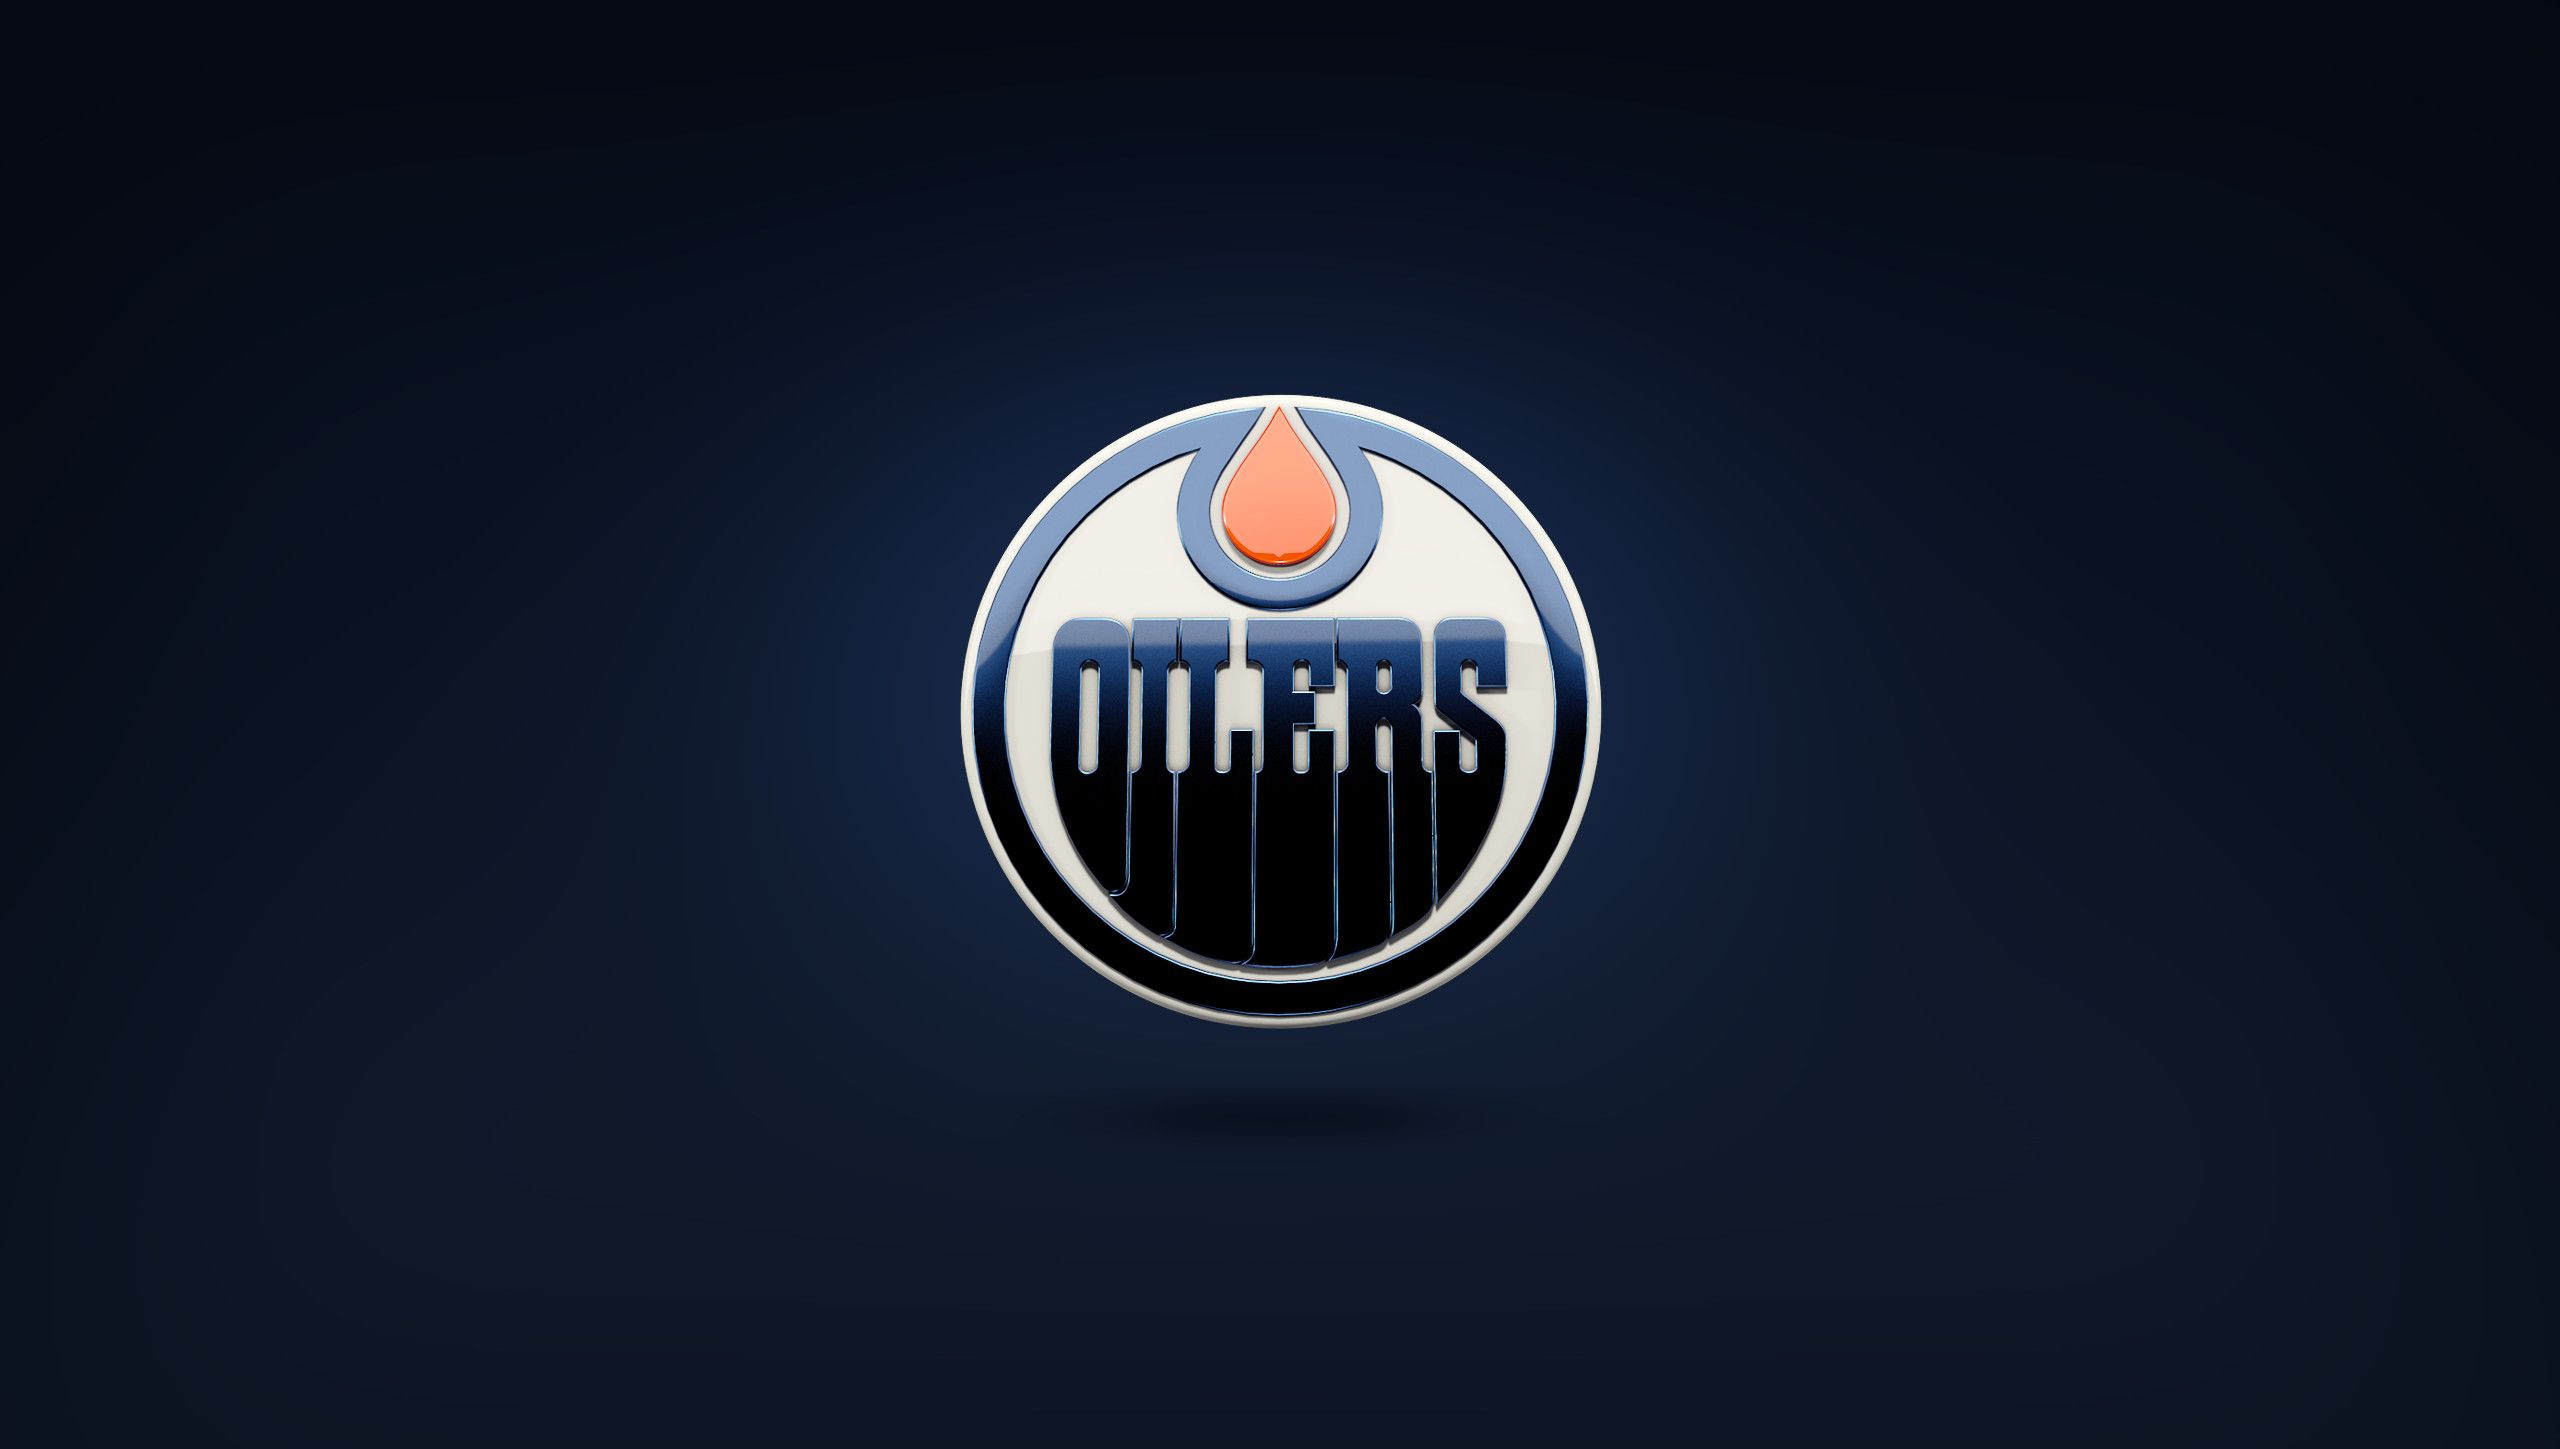 2560x1449 Edmonton Oilers Wallpapers Top Free Edmonton Oilers Backgrounds